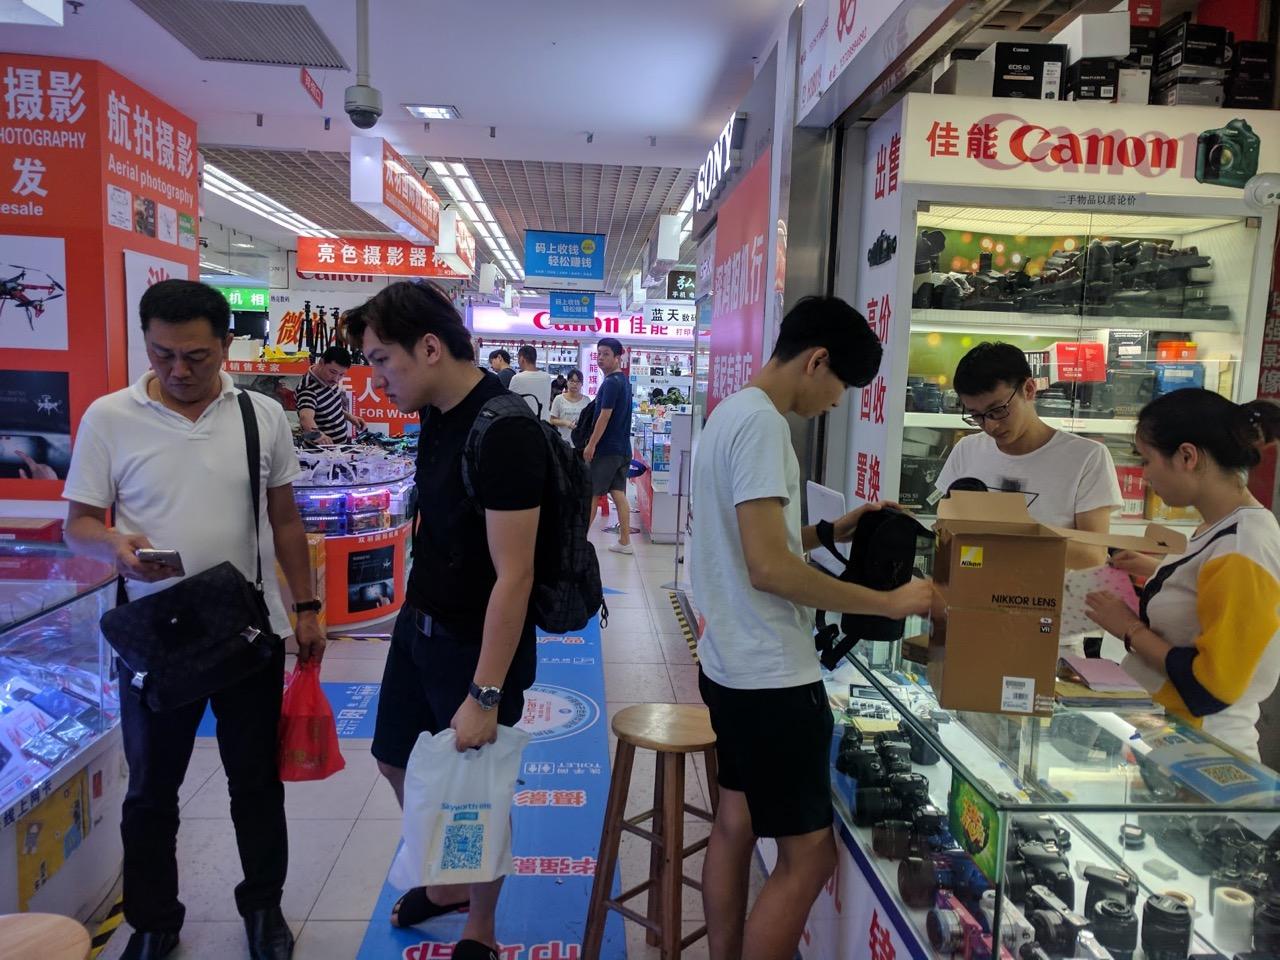 Shenzhen hi-tech shopping mall, in southern China